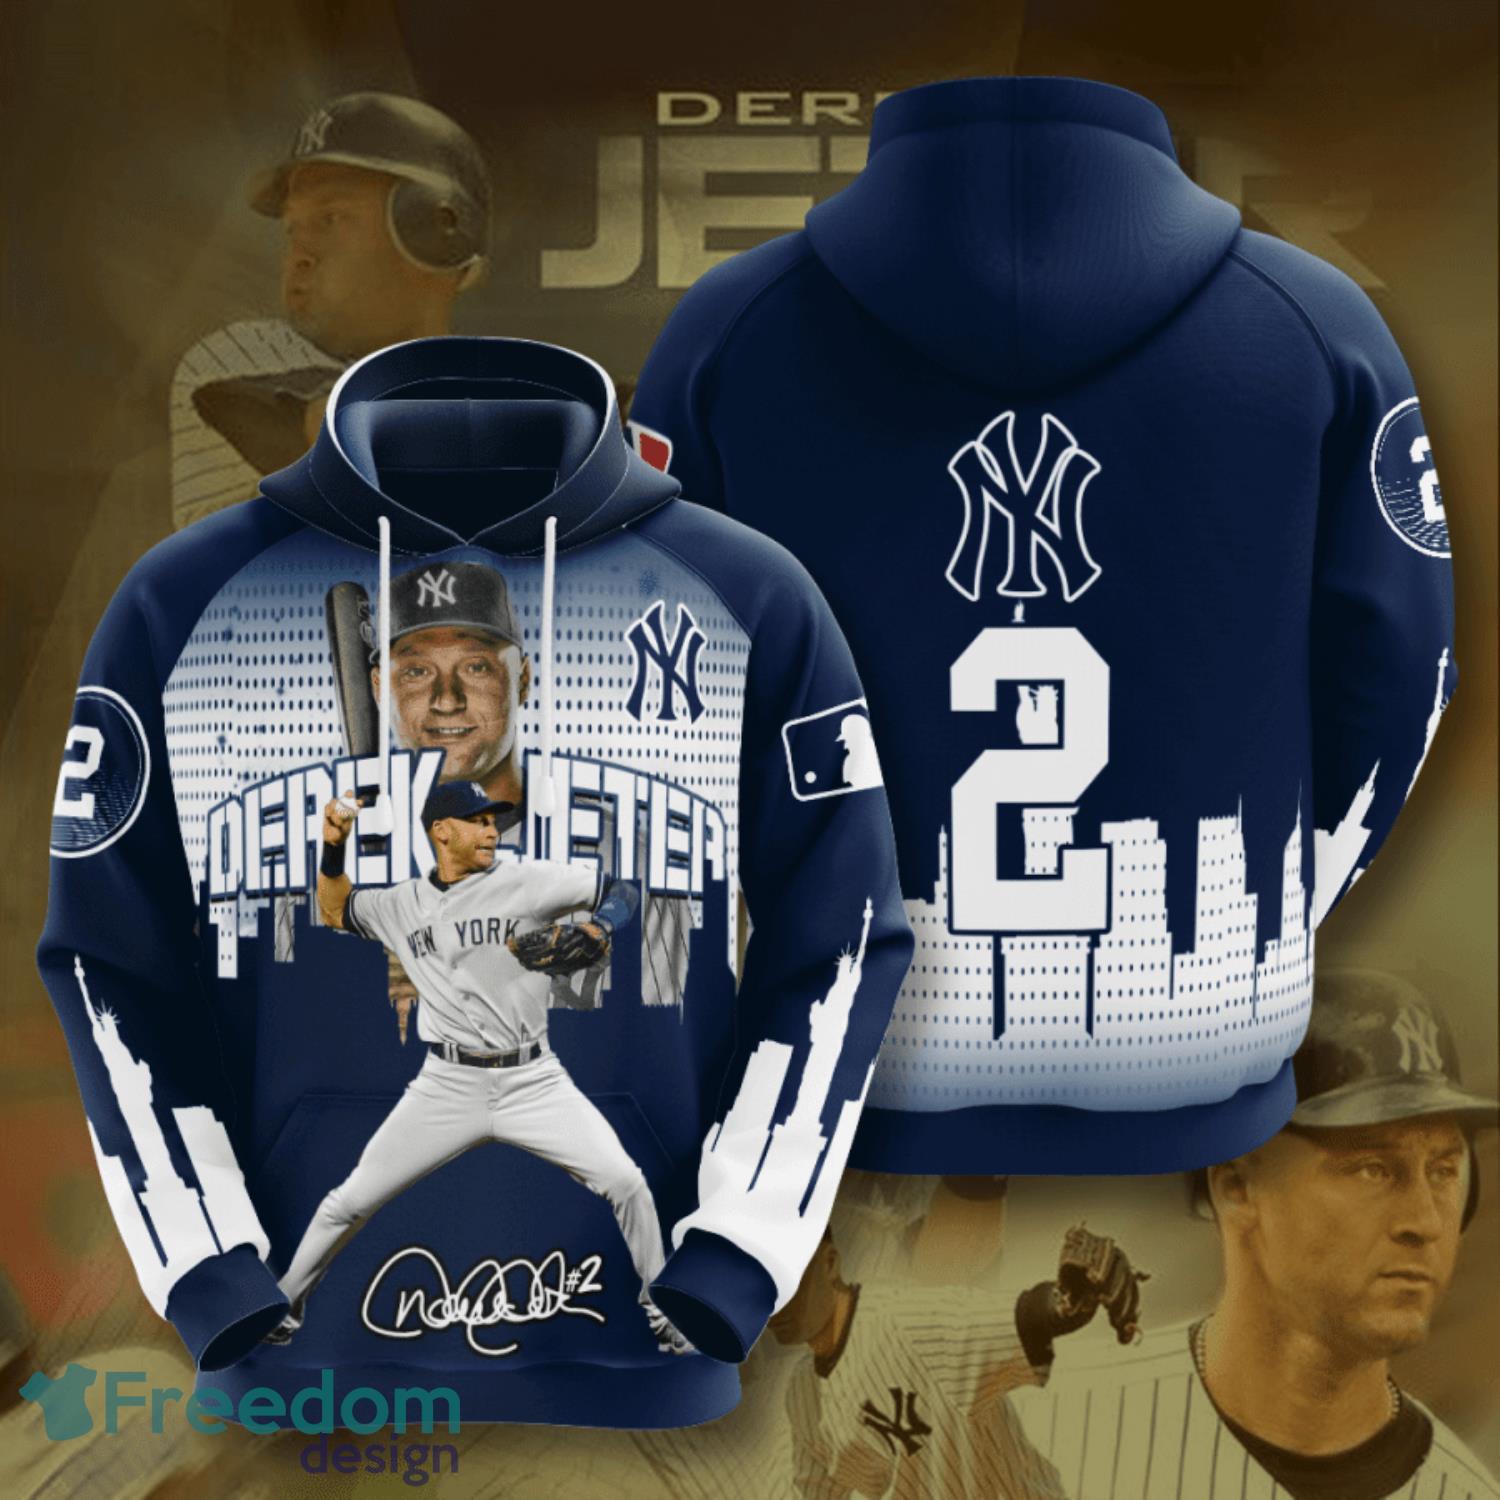 MLB New York Yankees (Derek Jeter) Women's T-Shirt.